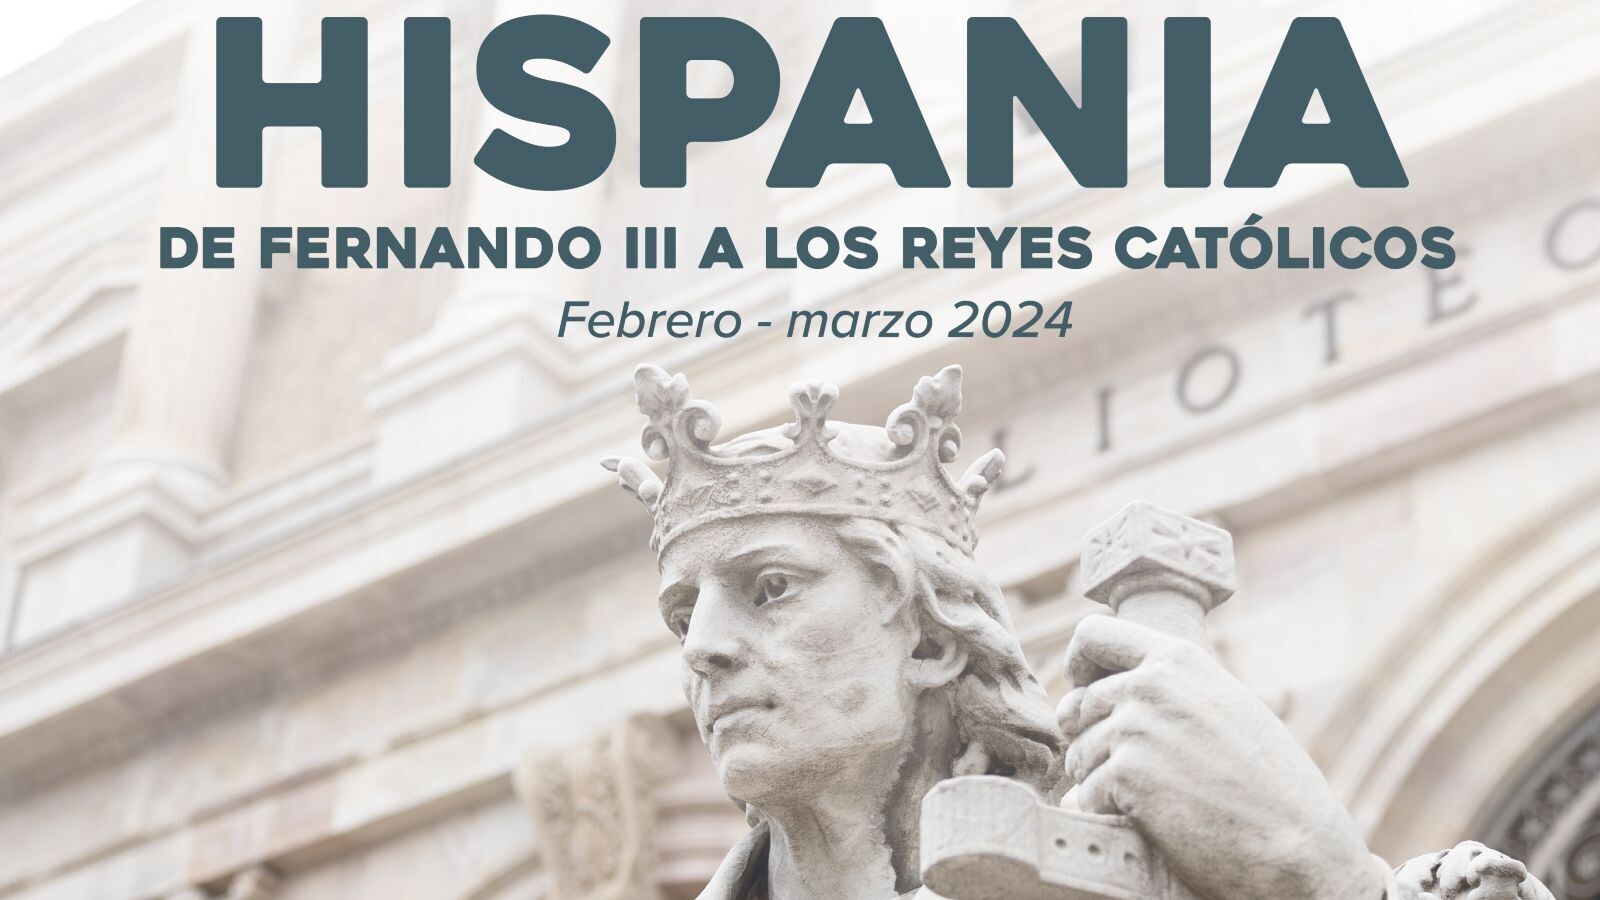 Nueva edición del ciclo de conferencias sobre “Hispania” en Pozuelo